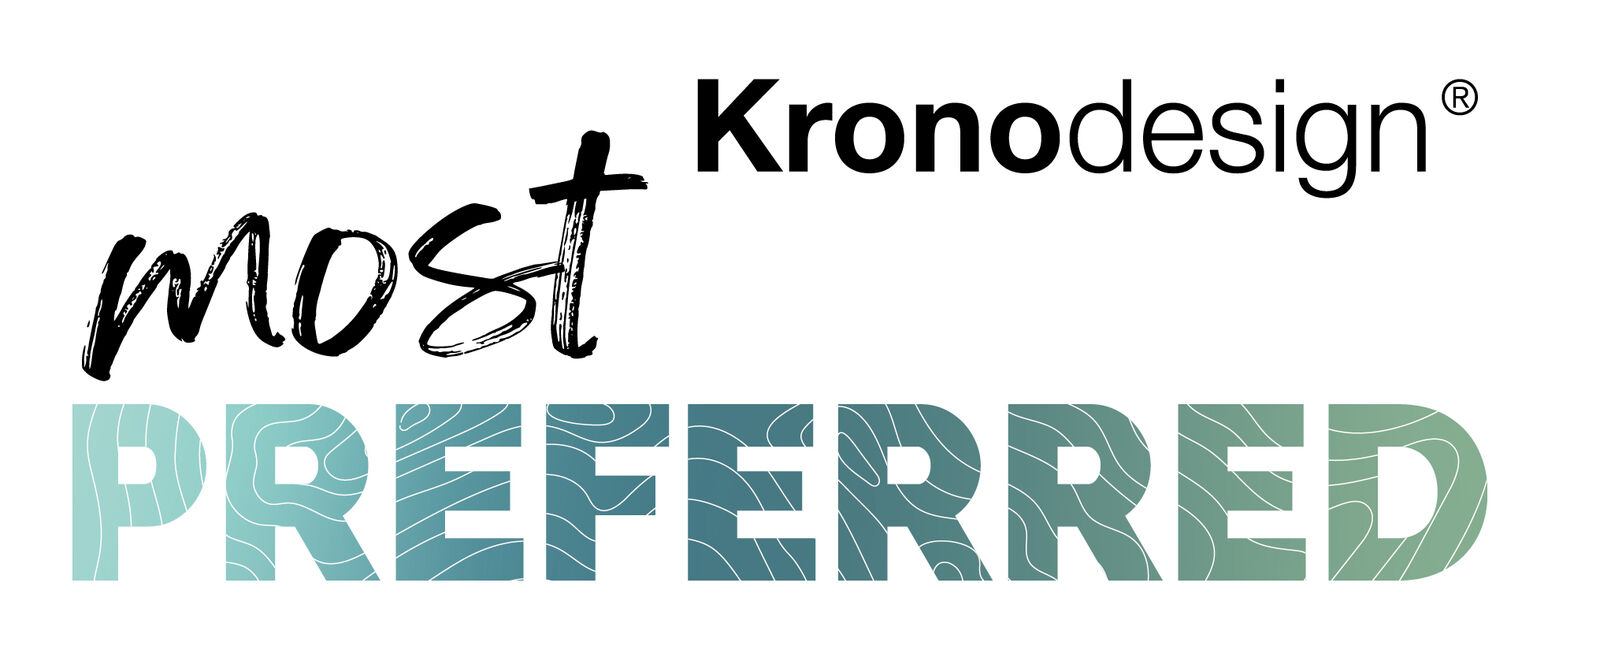 Most Prefered logo Kronodesign